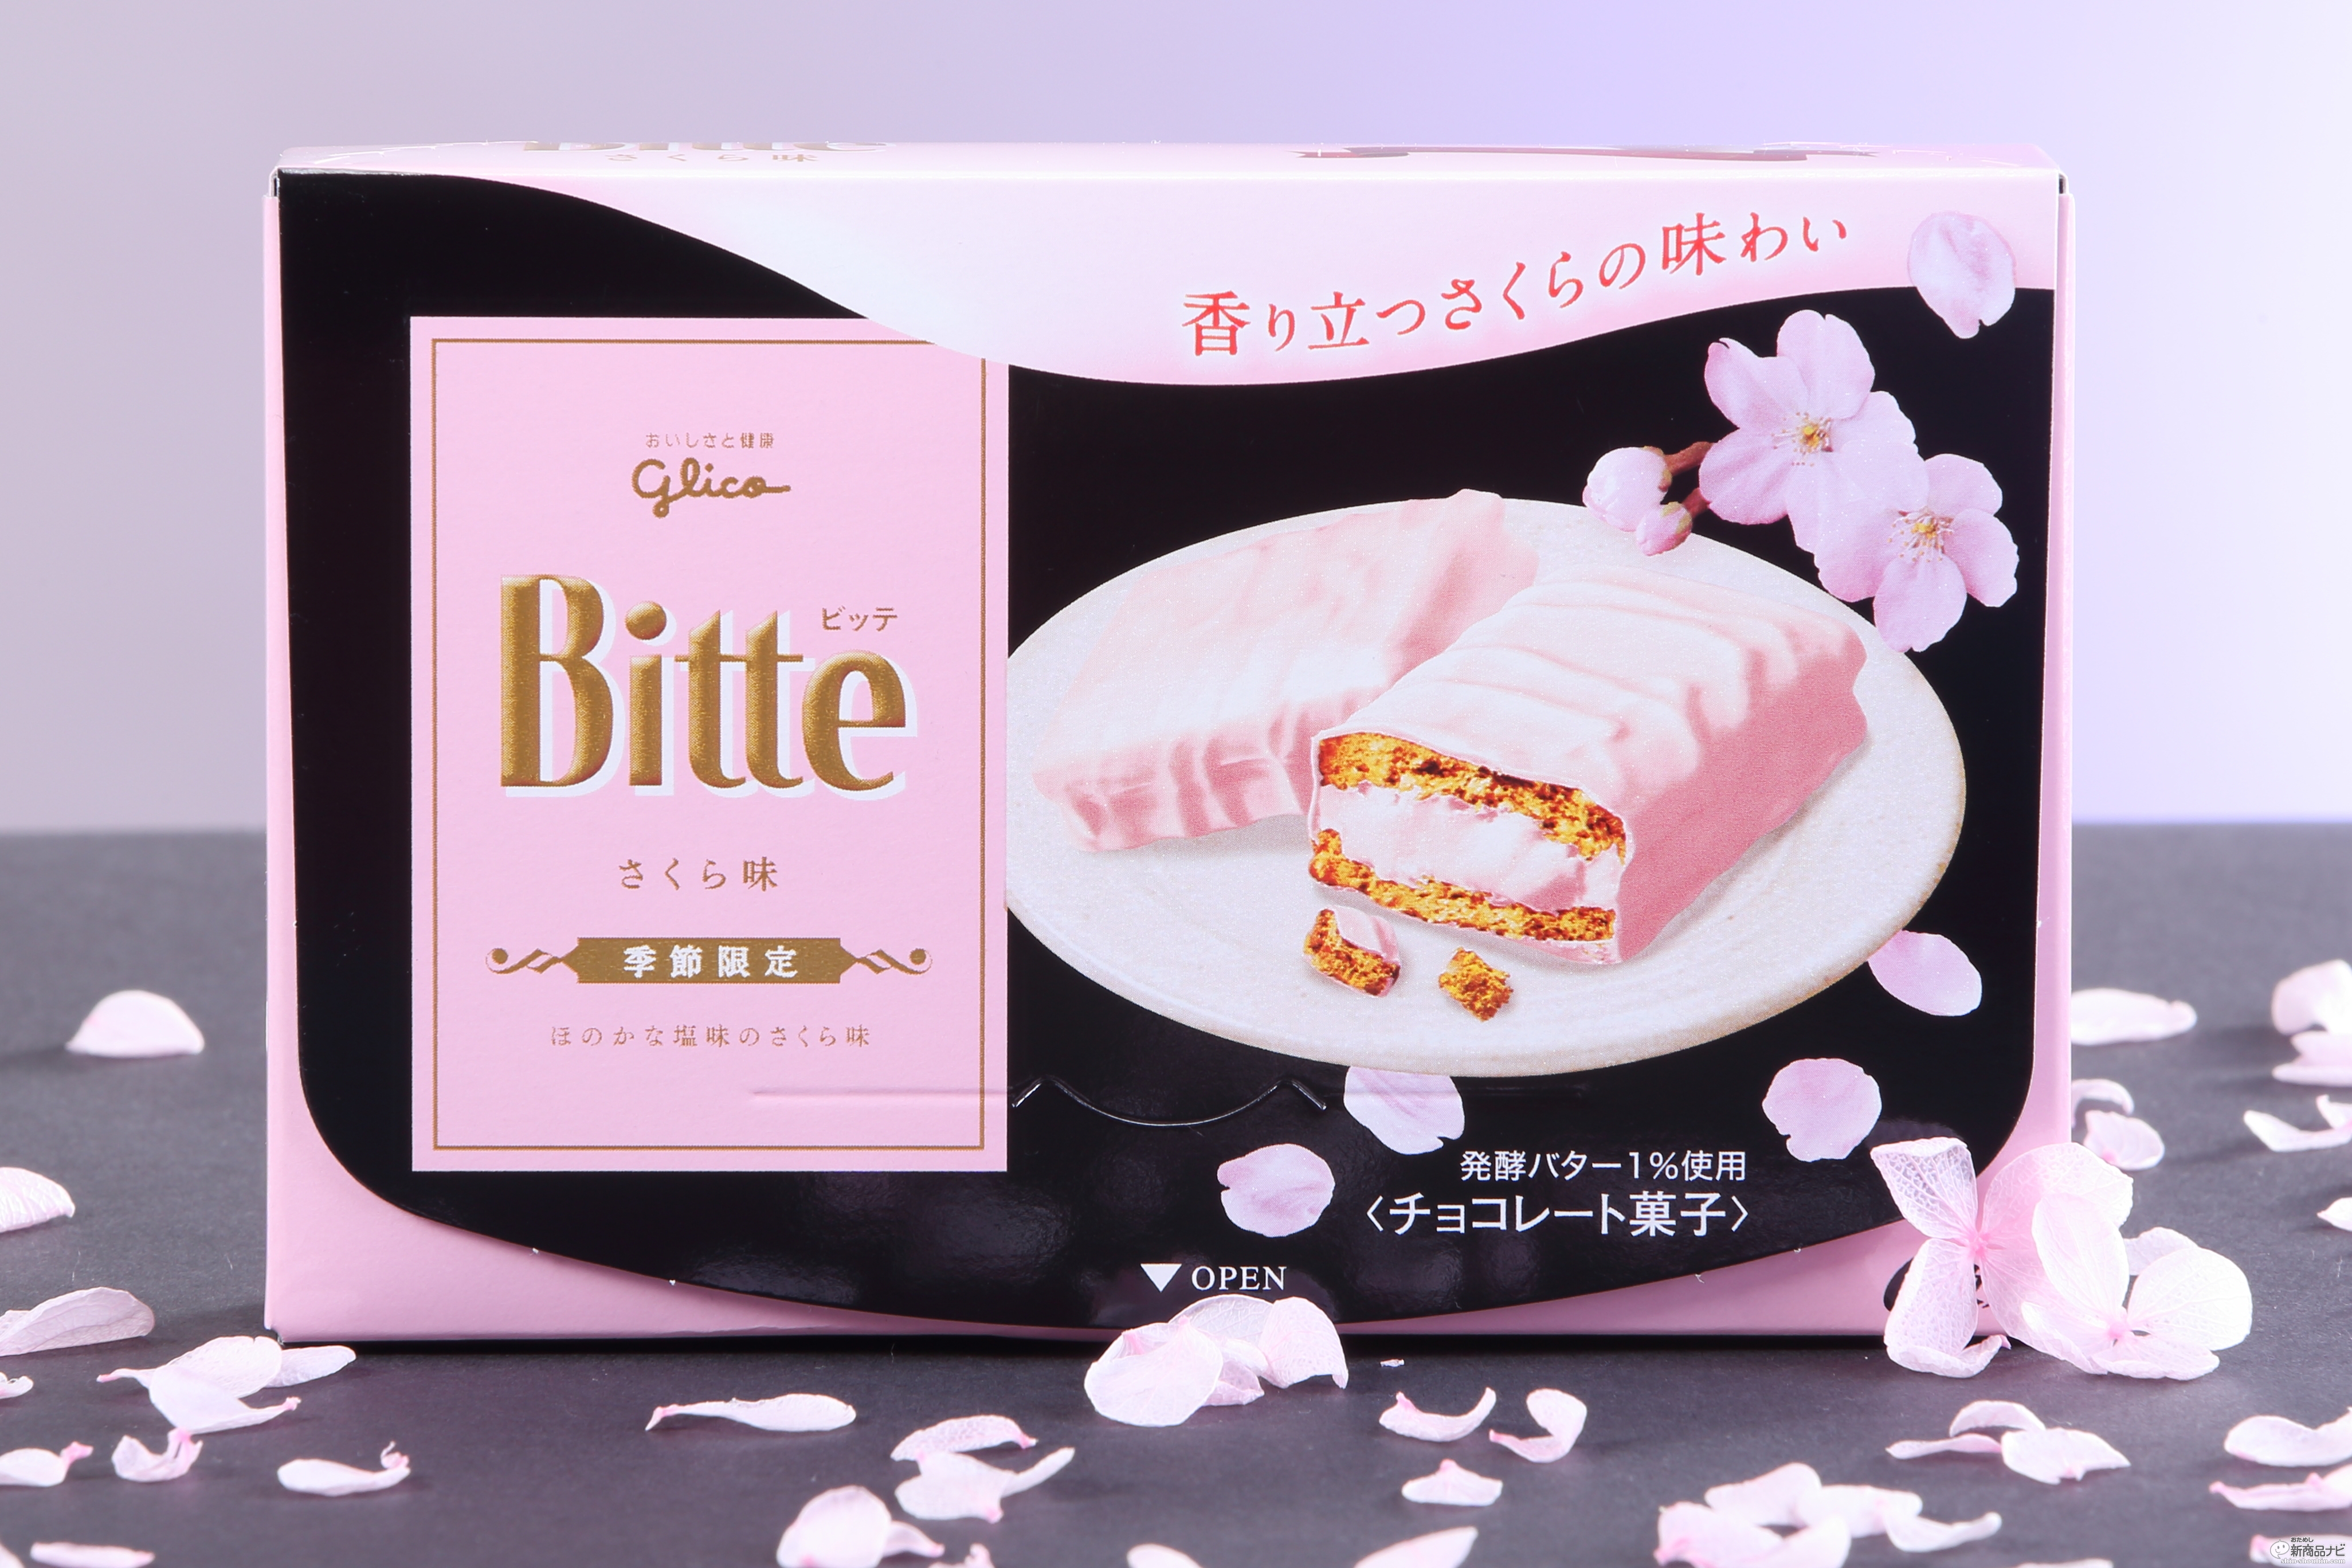 おためし新商品ナビ Blog Archive 桜チョコレートは甘いだけじゃなかった グリコ ビッテ さくら味 はこの時期だけの味わい